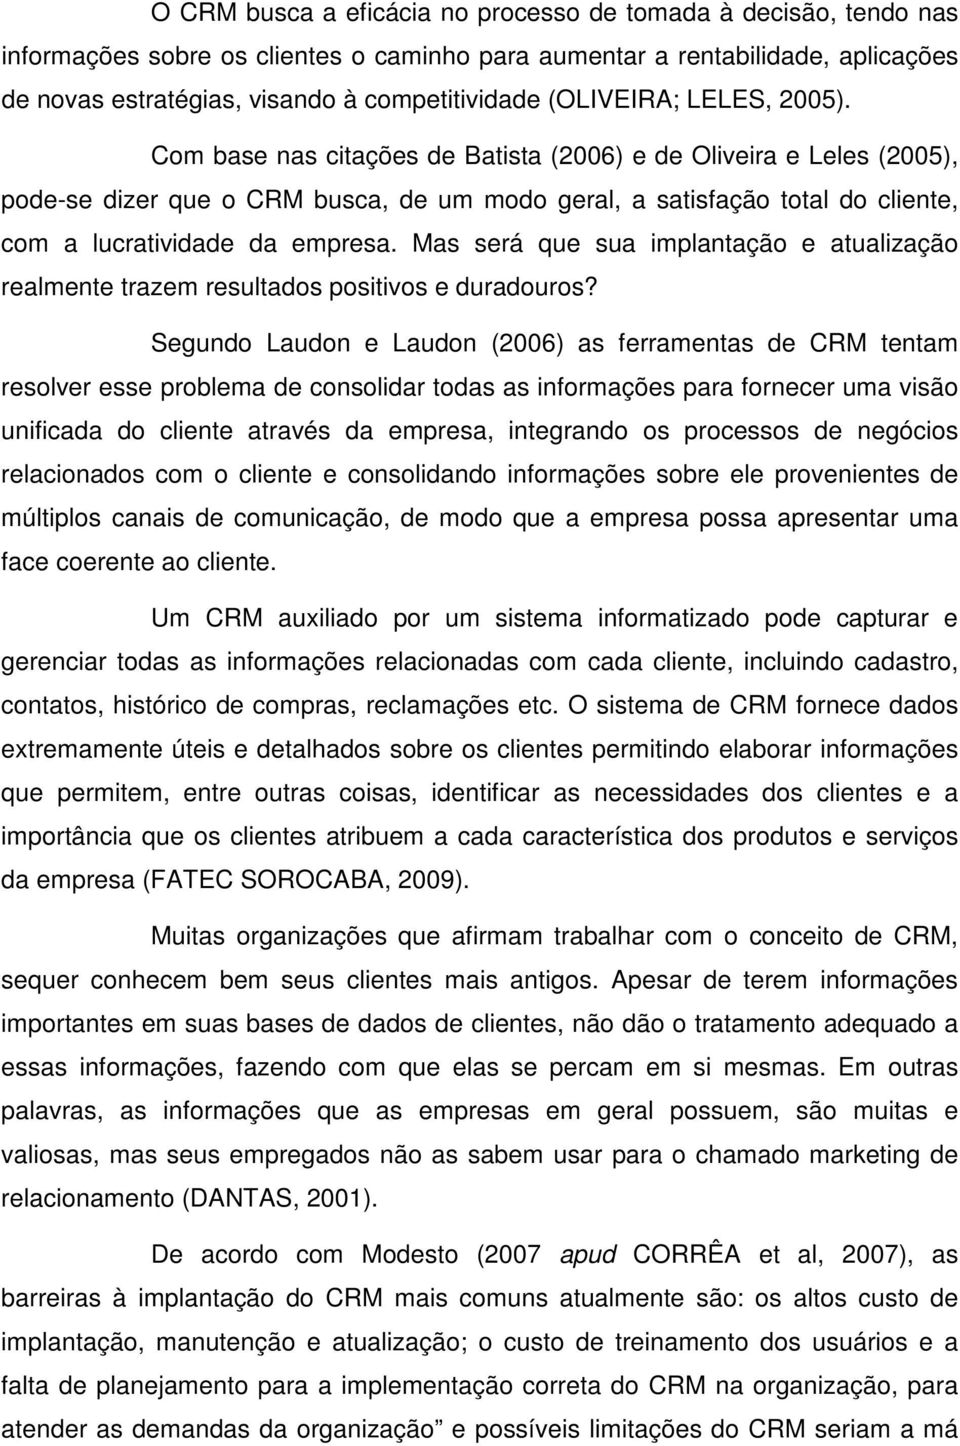 Com base nas citações de Batista (2006) e de Oliveira e Leles (2005), pode-se dizer que o CRM busca, de um modo geral, a satisfação total do cliente, com a lucratividade da empresa.